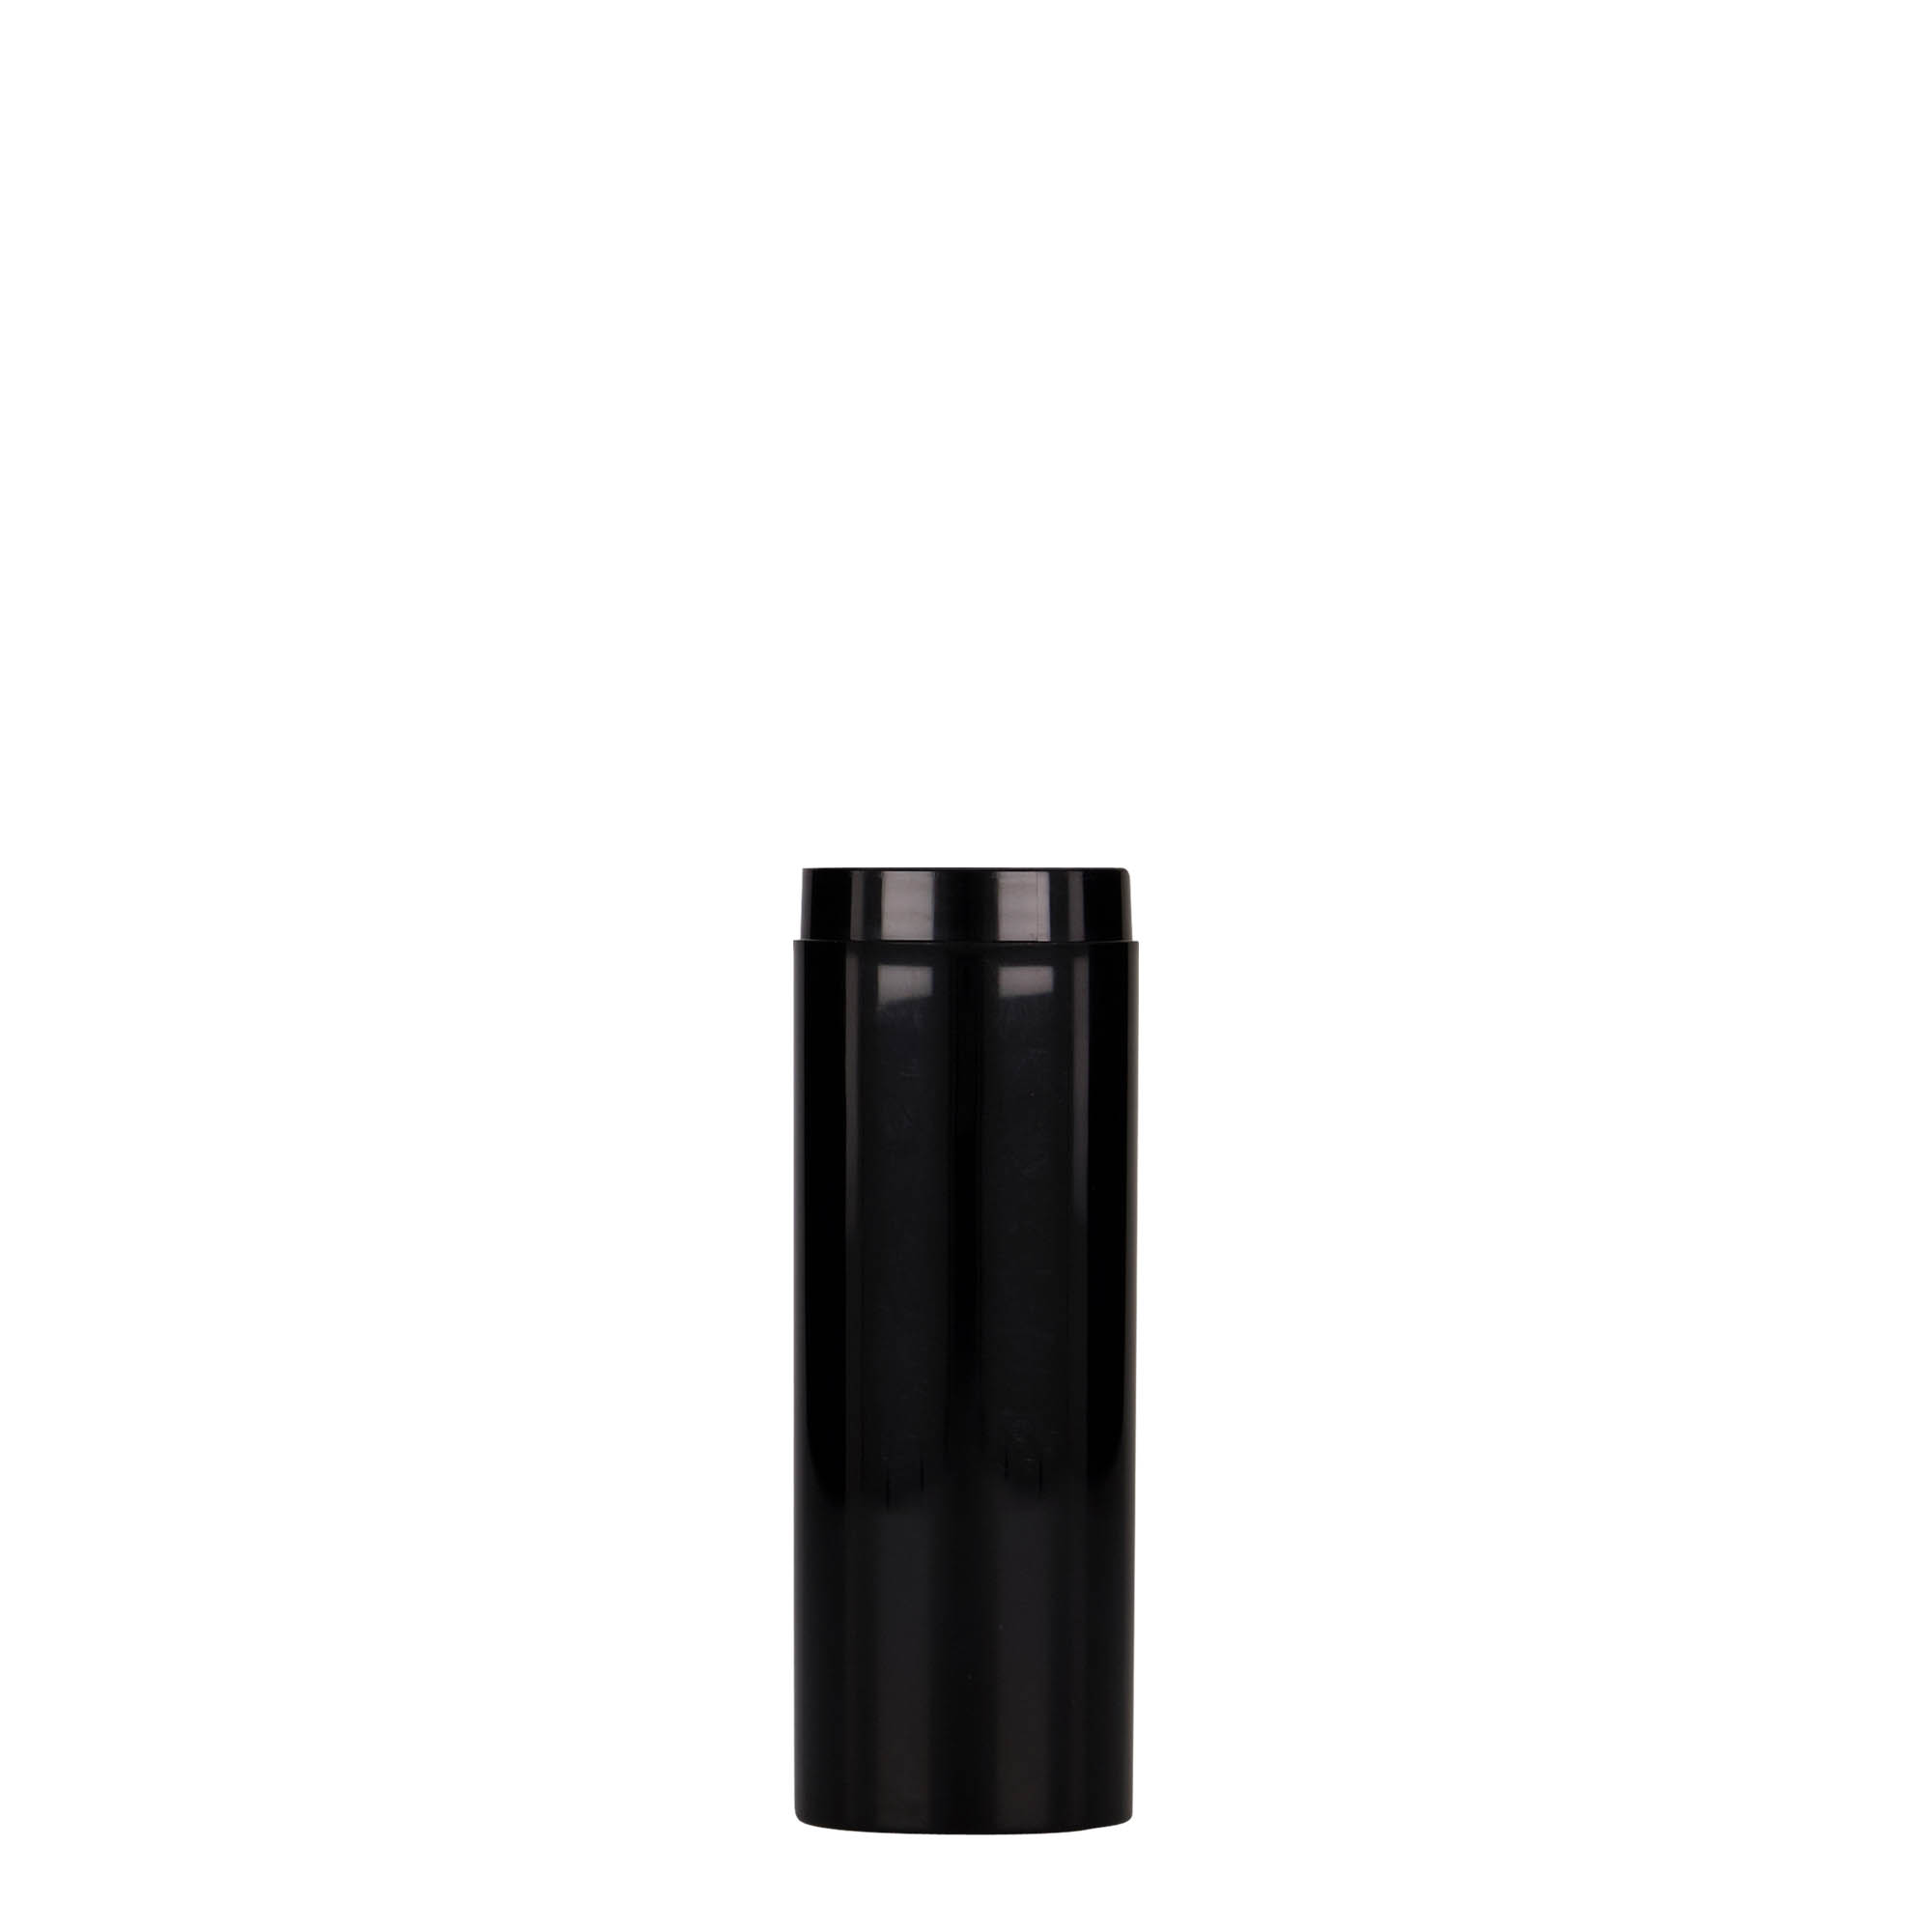 Bezvzduchový dávkovač 30 ml 'Micro', plast PP, černý